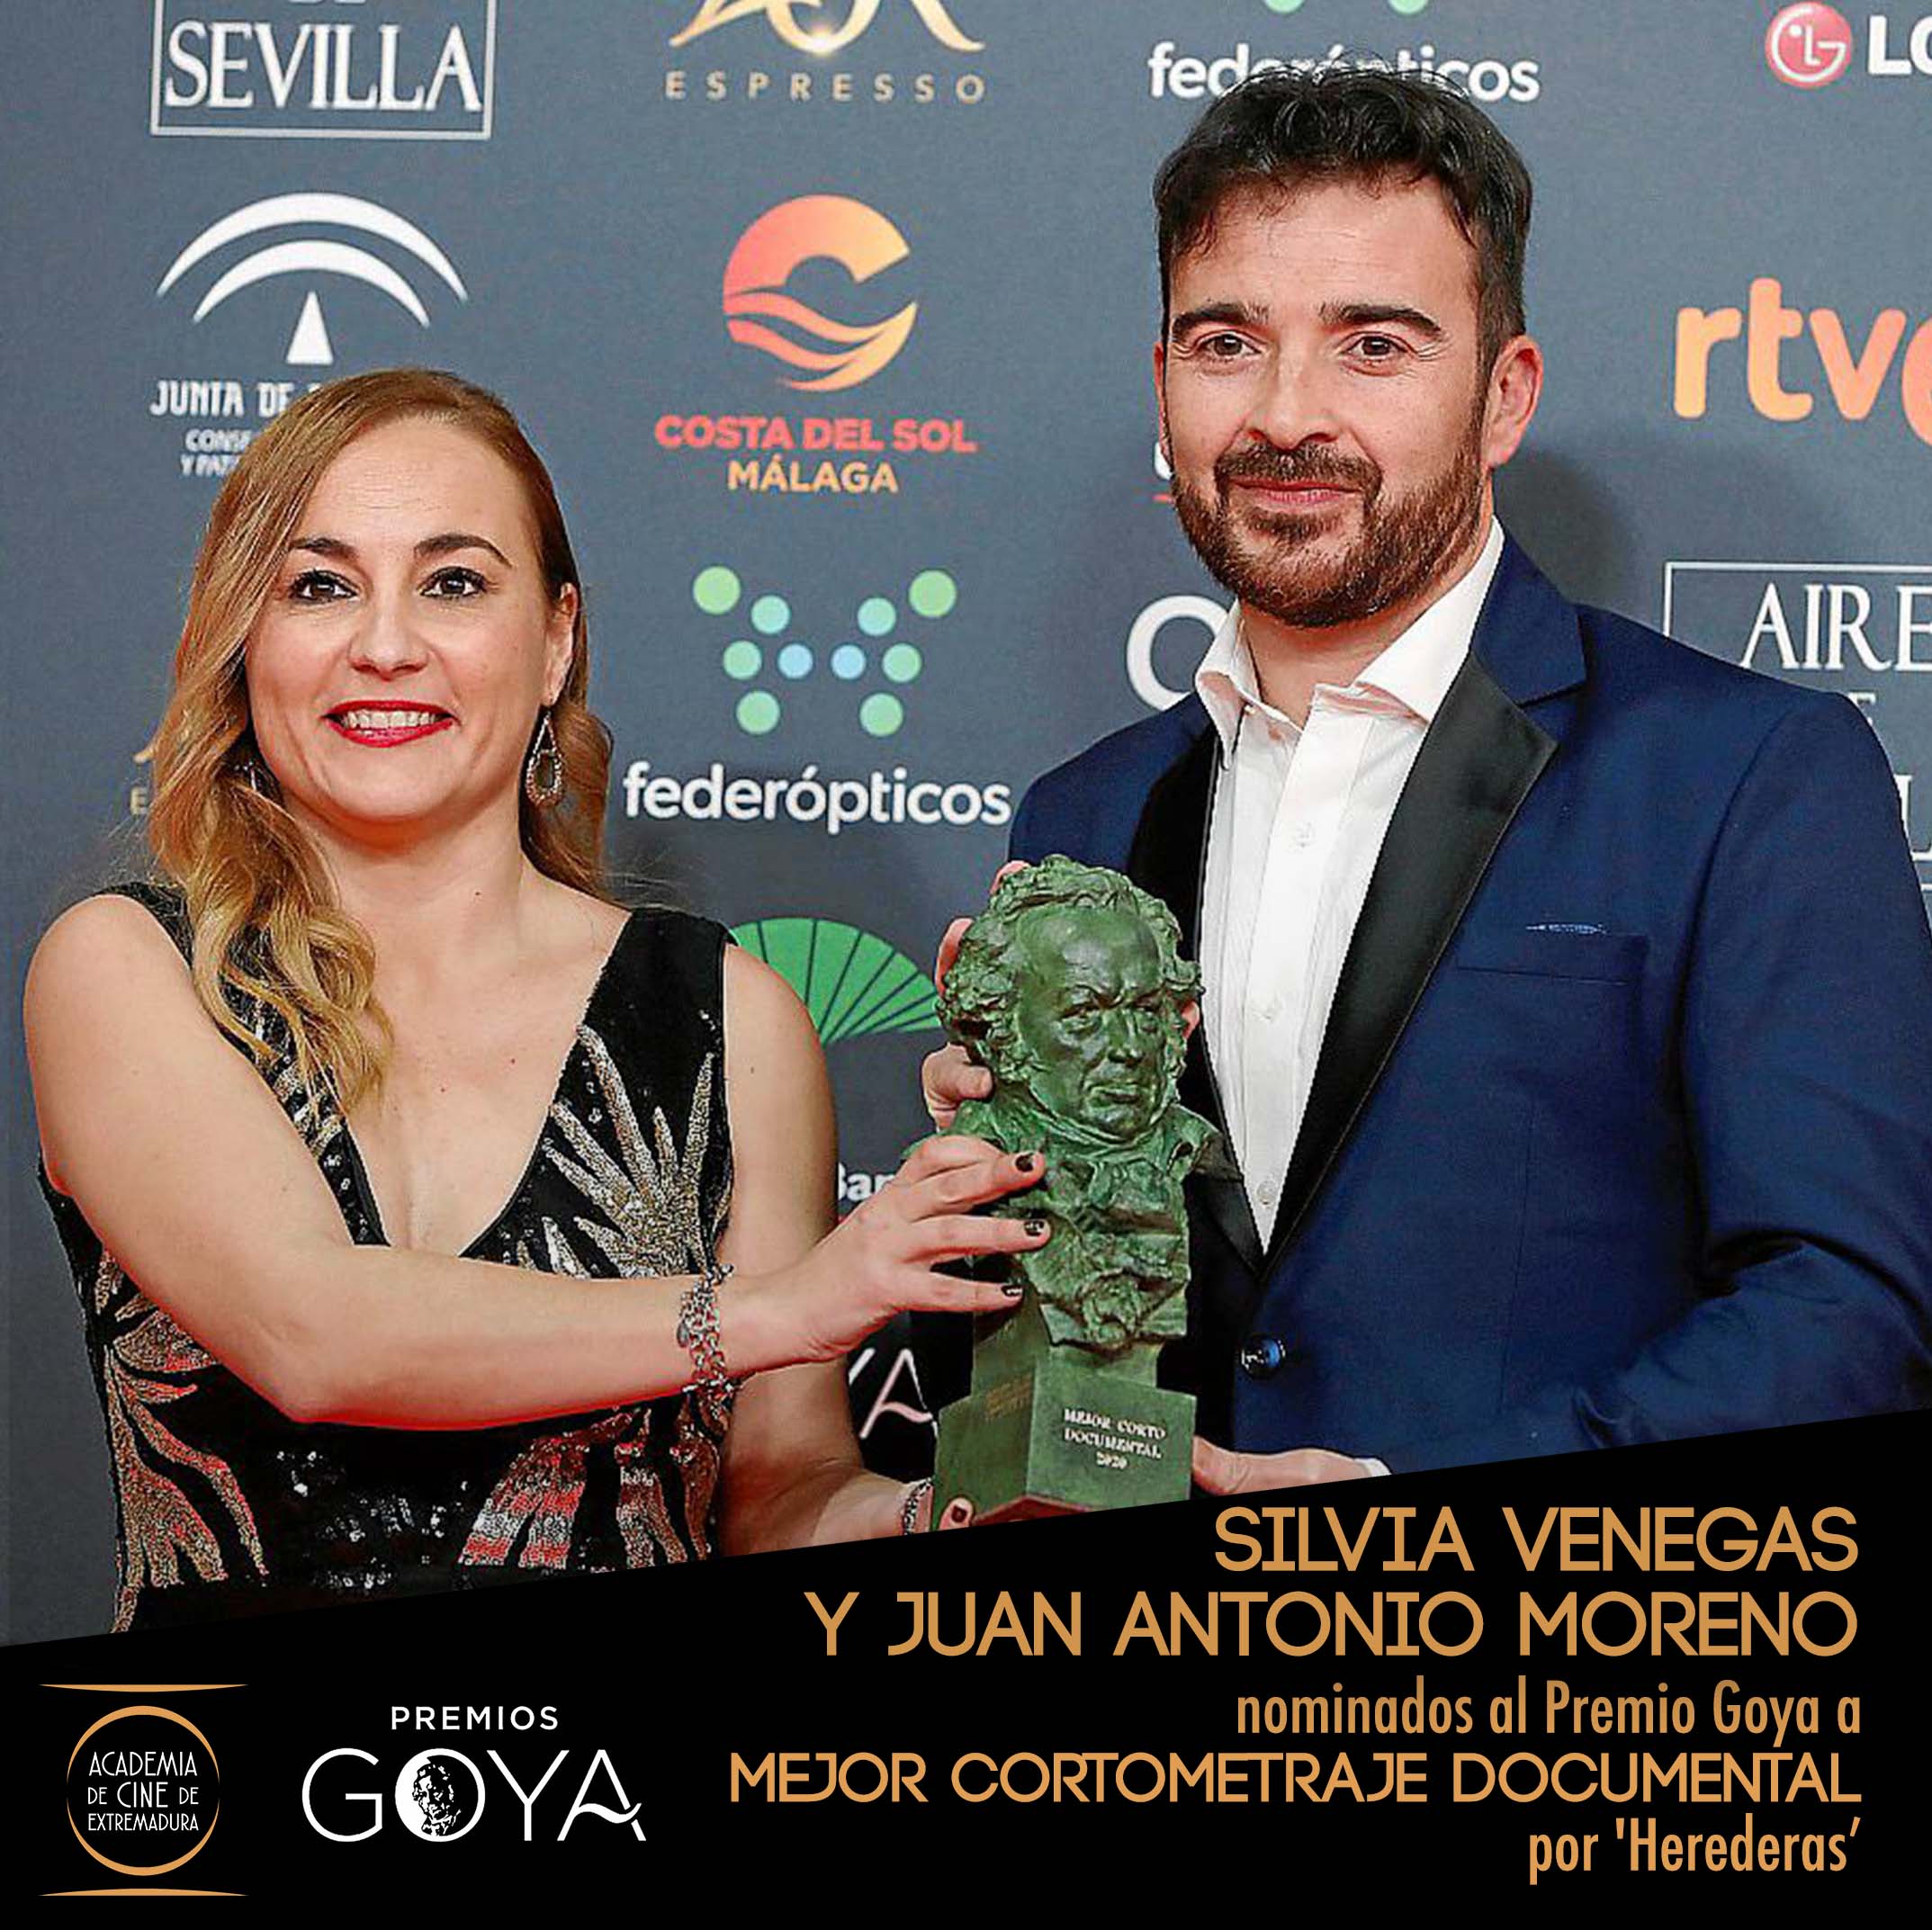 Image 4 of article La Junta de Extremadura felicita a los nominados a los Goya y subraya su apuesta por el cine extremeño